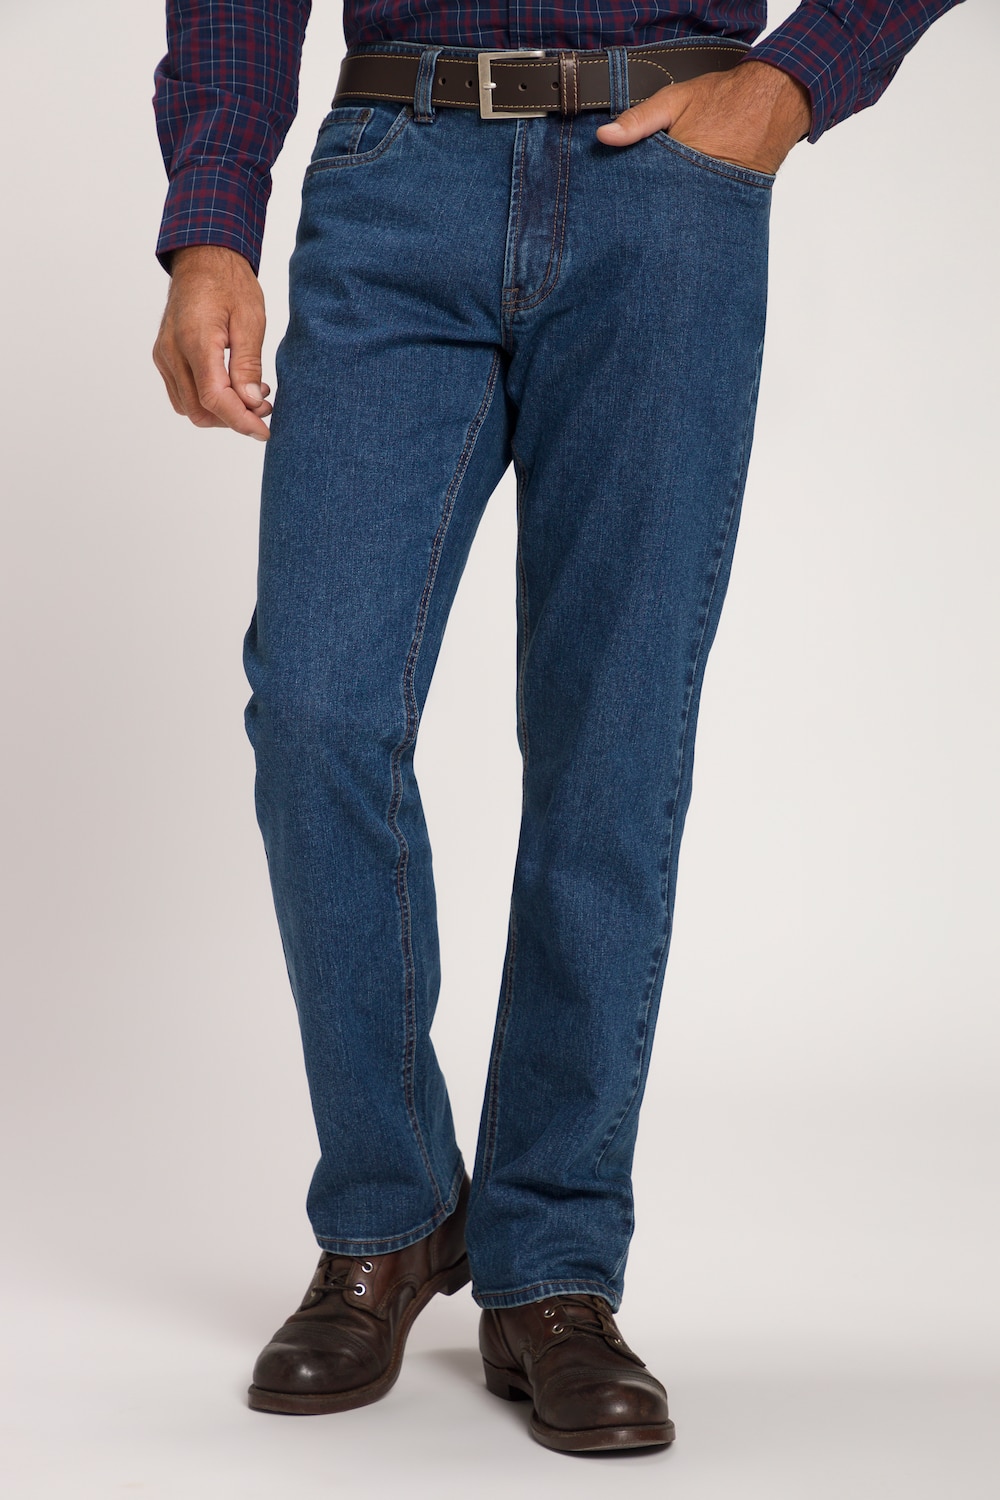 grandes tailles jean 5 poches, hommes, bleu, taille: 64, coton, jp1880